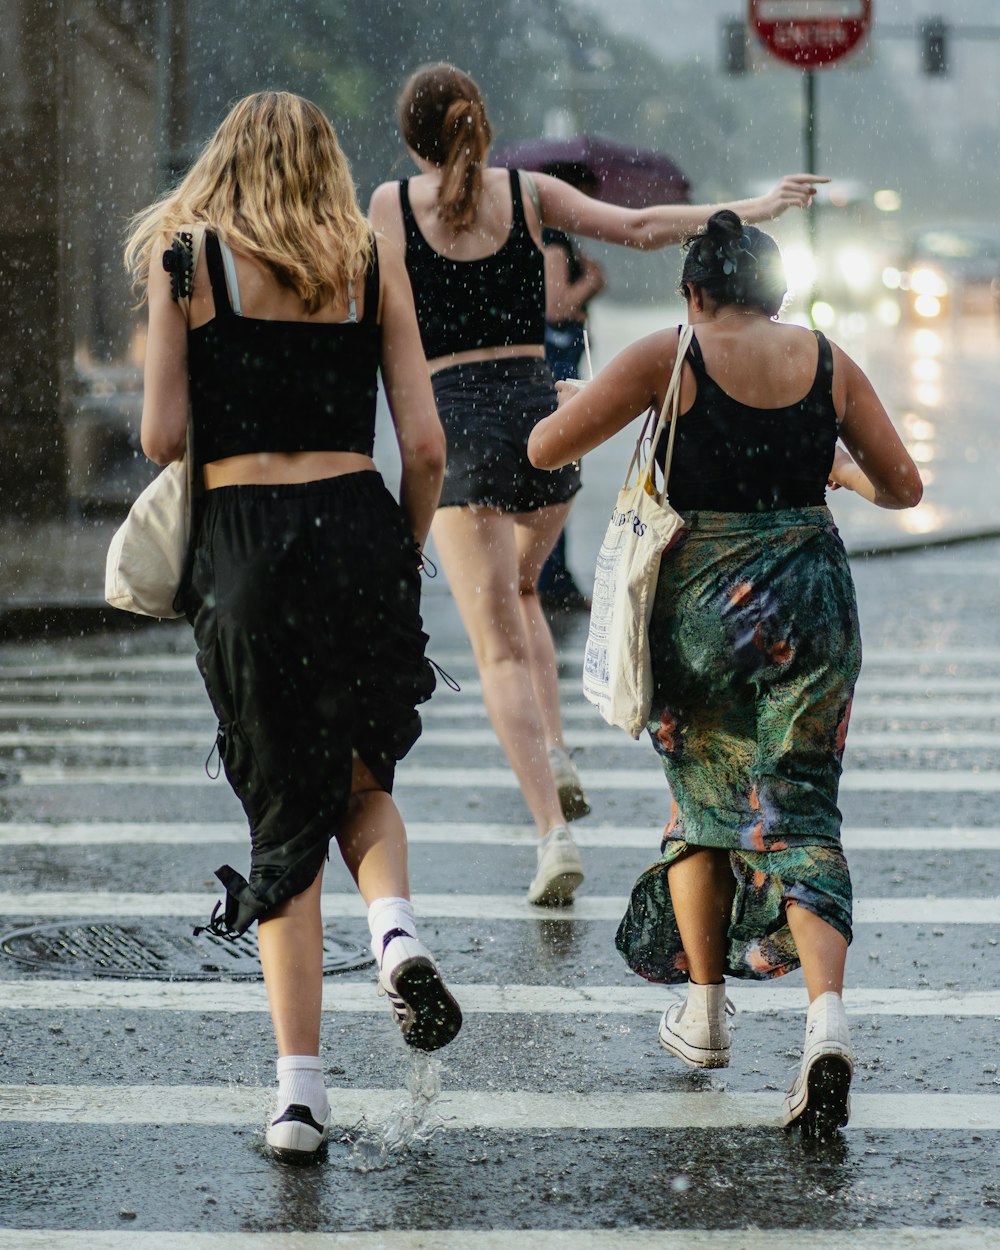 three women walking across a street in the rain